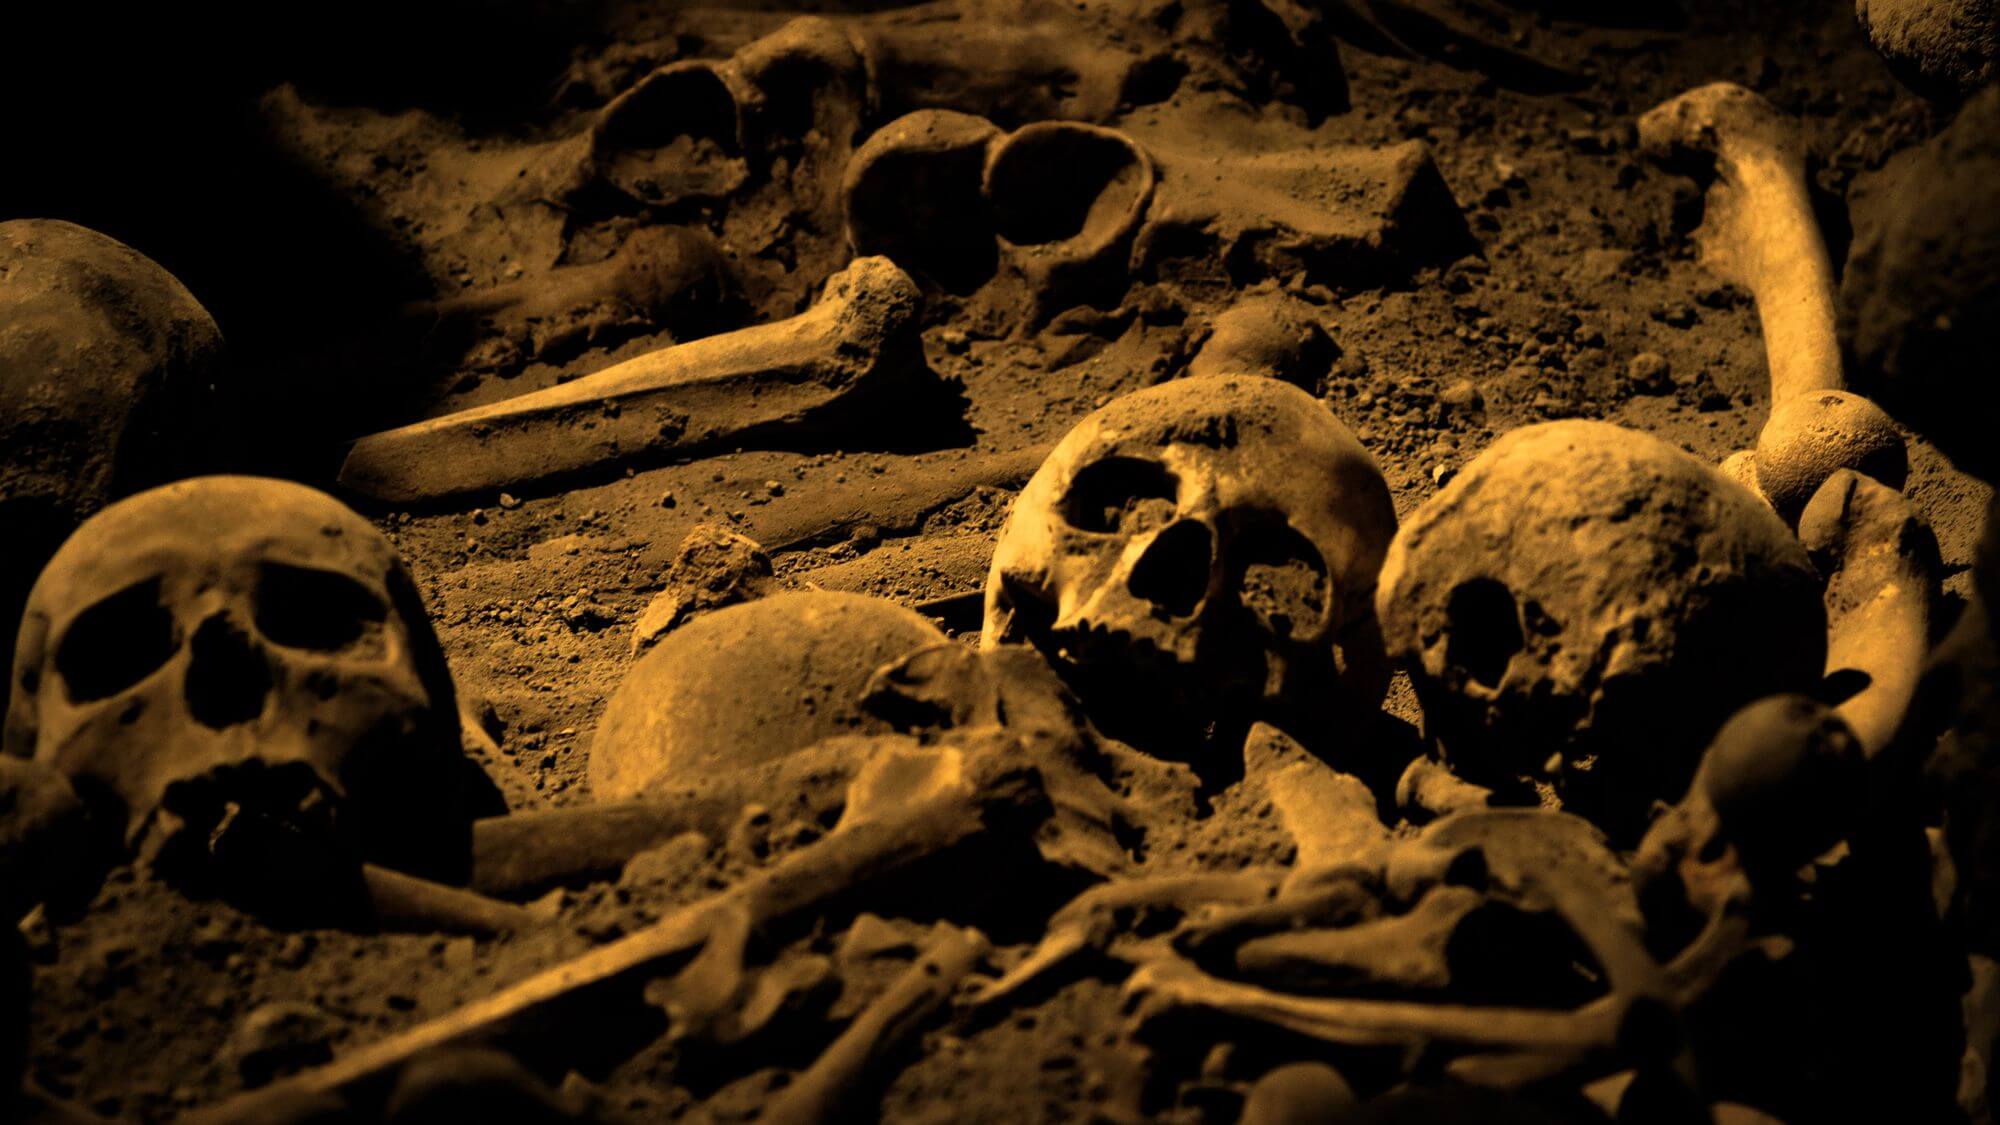 Dosud nejstarší ostatky denisovanů byly nalezeny v sibiřské jeskyni. Staré jsou přes 200 tisíc let